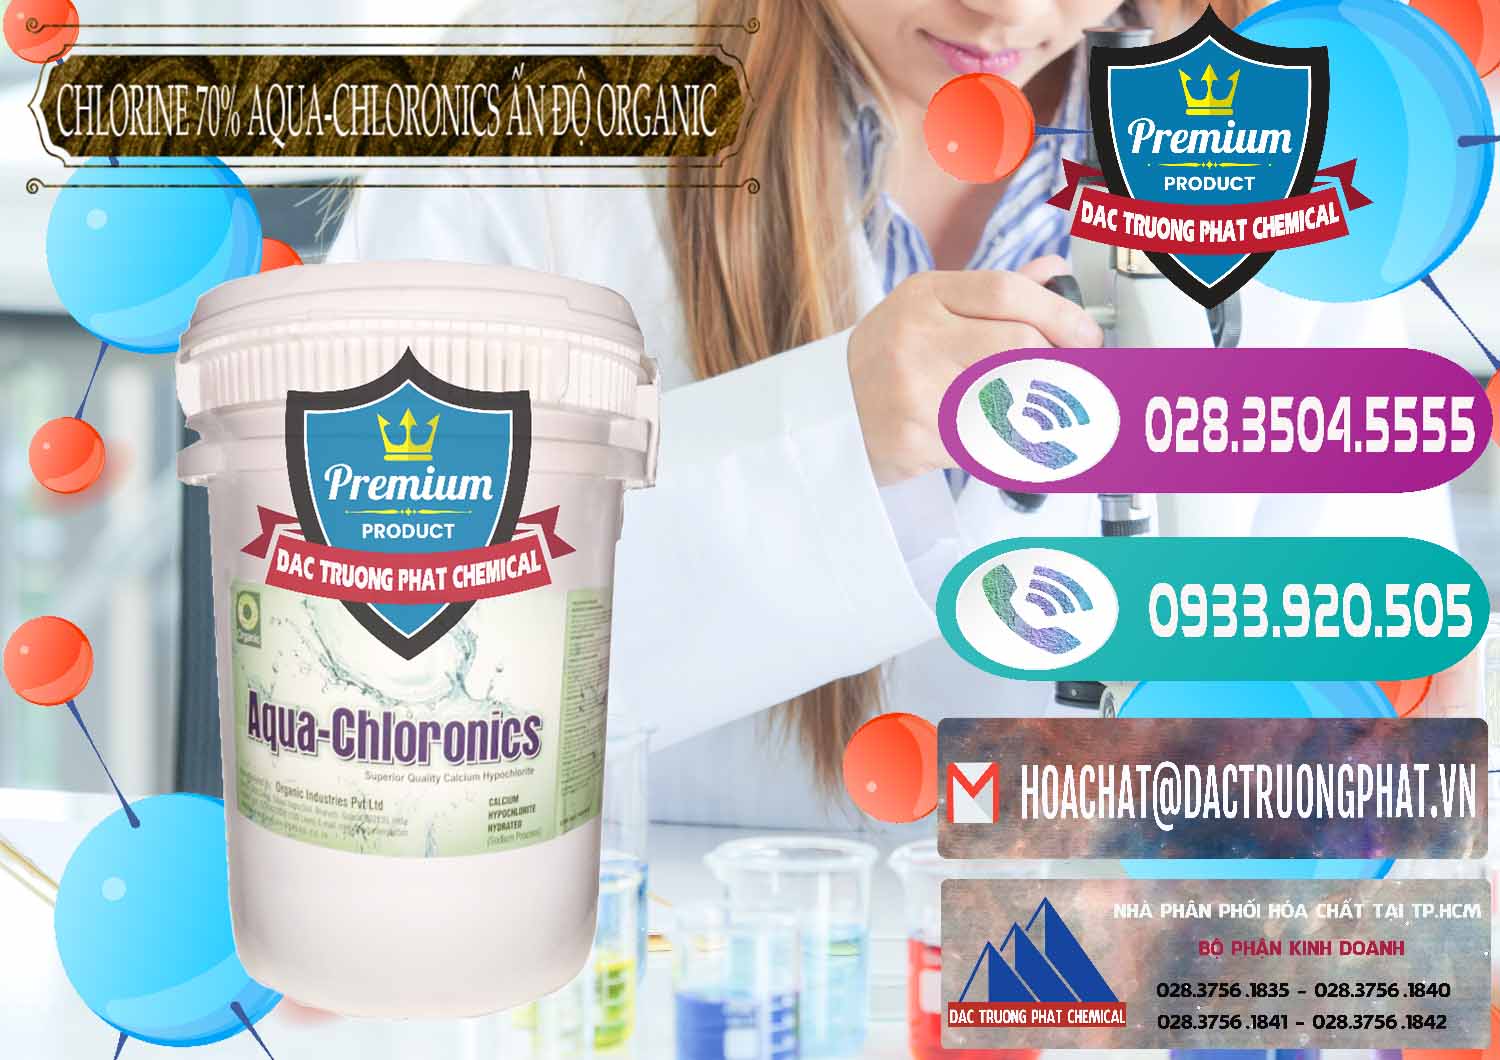 Công ty bán - cung cấp Chlorine – Clorin 70% Aqua-Chloronics Ấn Độ Organic India - 0211 - Cty nhập khẩu & phân phối hóa chất tại TP.HCM - hoachatxulynuoc.com